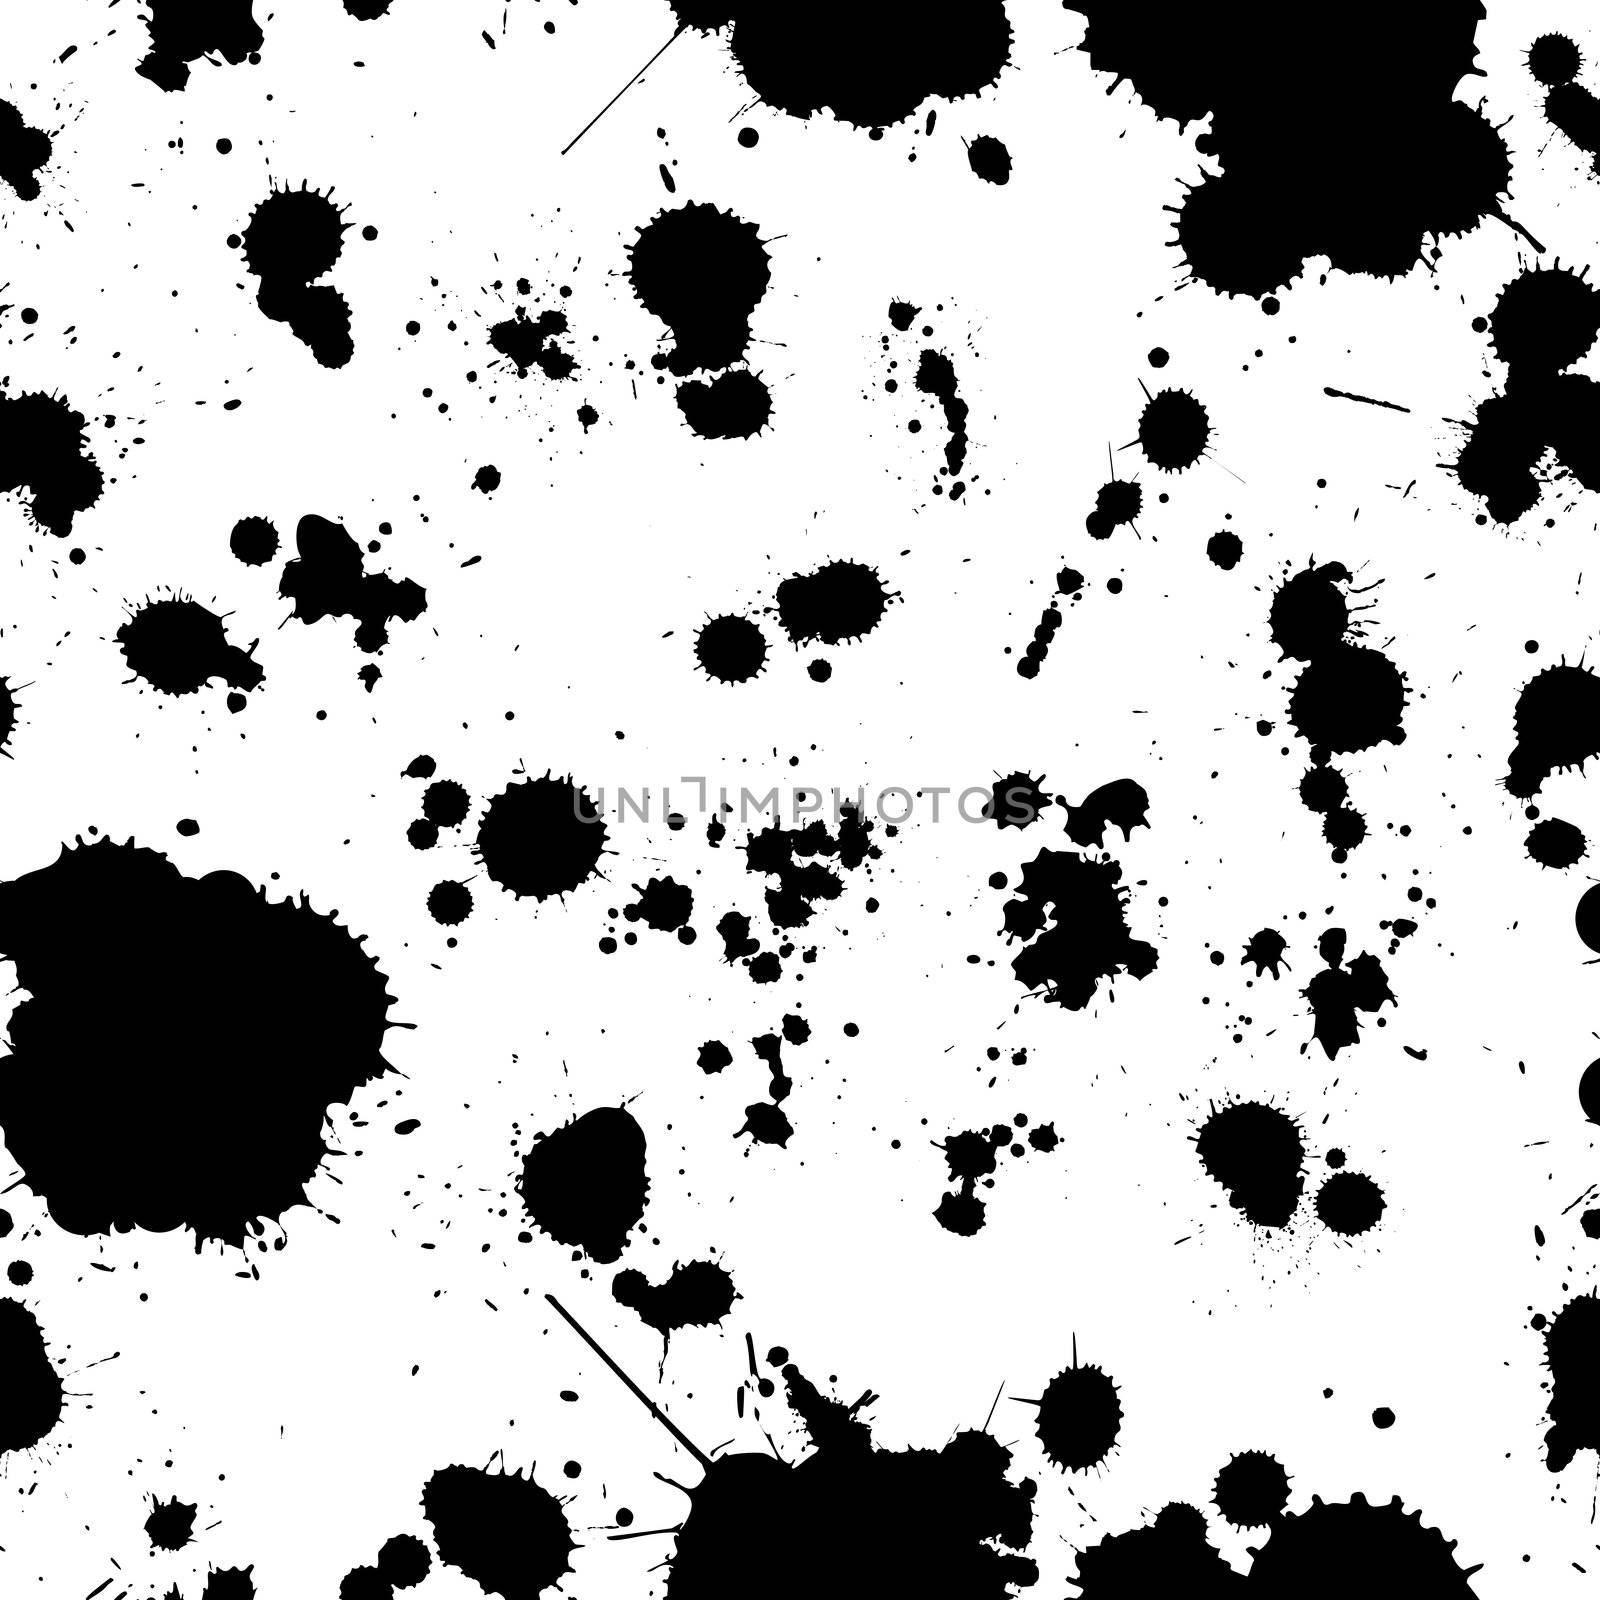 ink splats pattern by Lirch